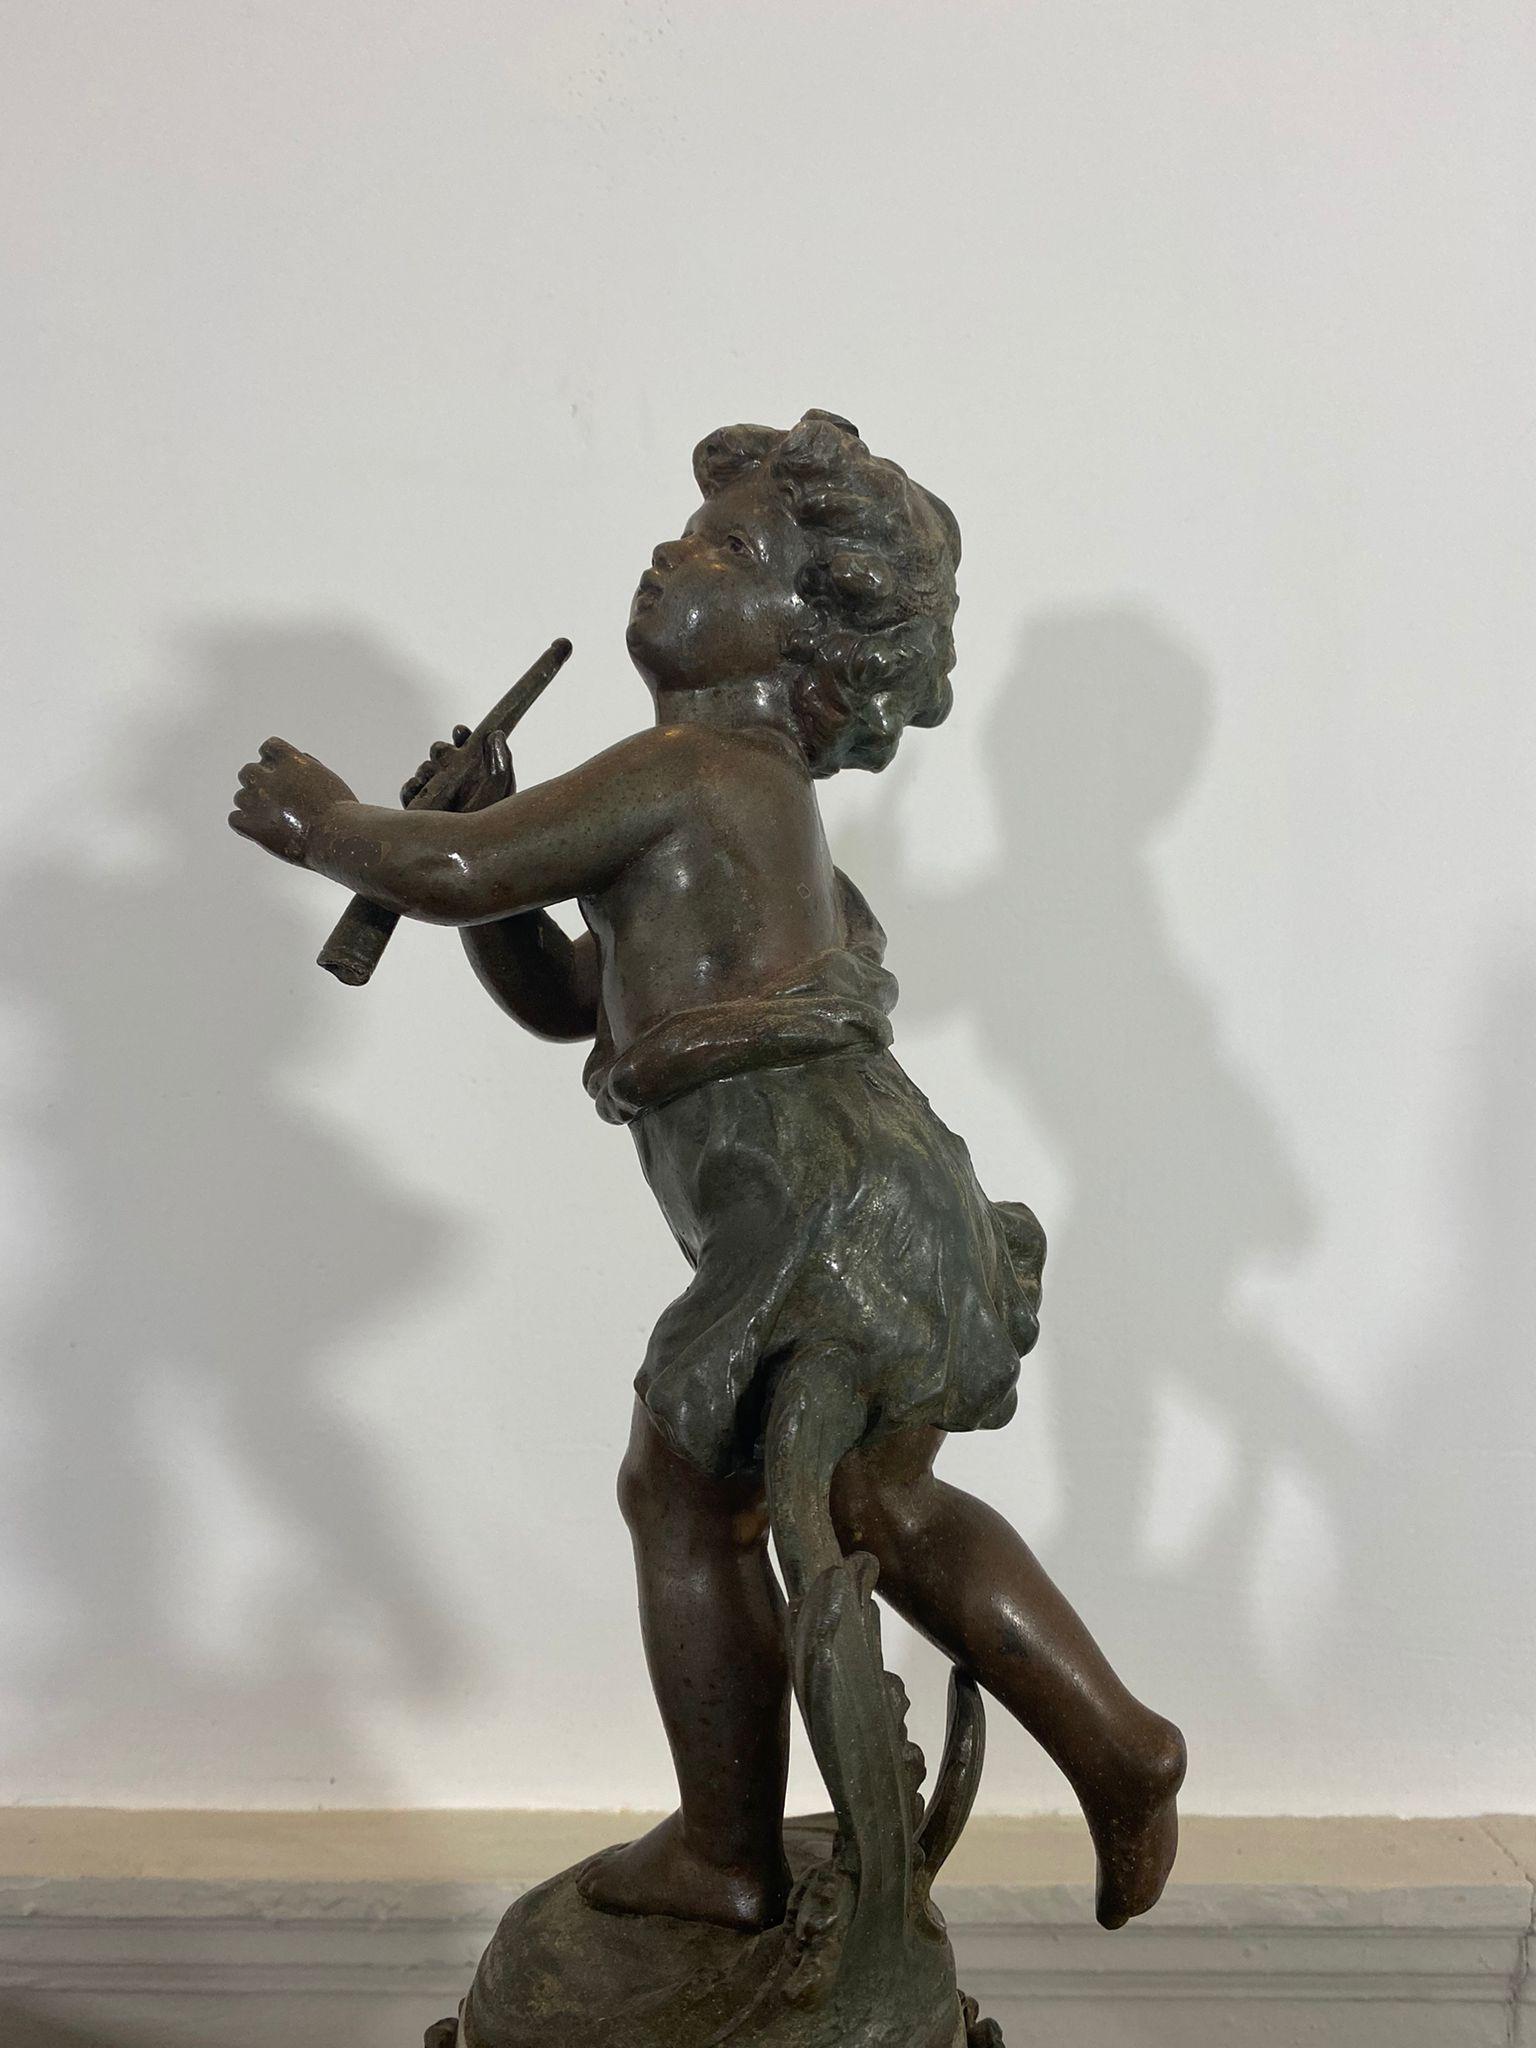 Charmante sculpture en fonte à patine bronze, dans le style d'Auguste Moreau, représentant un jeune flûtiste vêtu d'habits de campagne, portant sa flûte dans la main gauche et semblant être en mouvement (par la position de ses jambes et l'effet dans